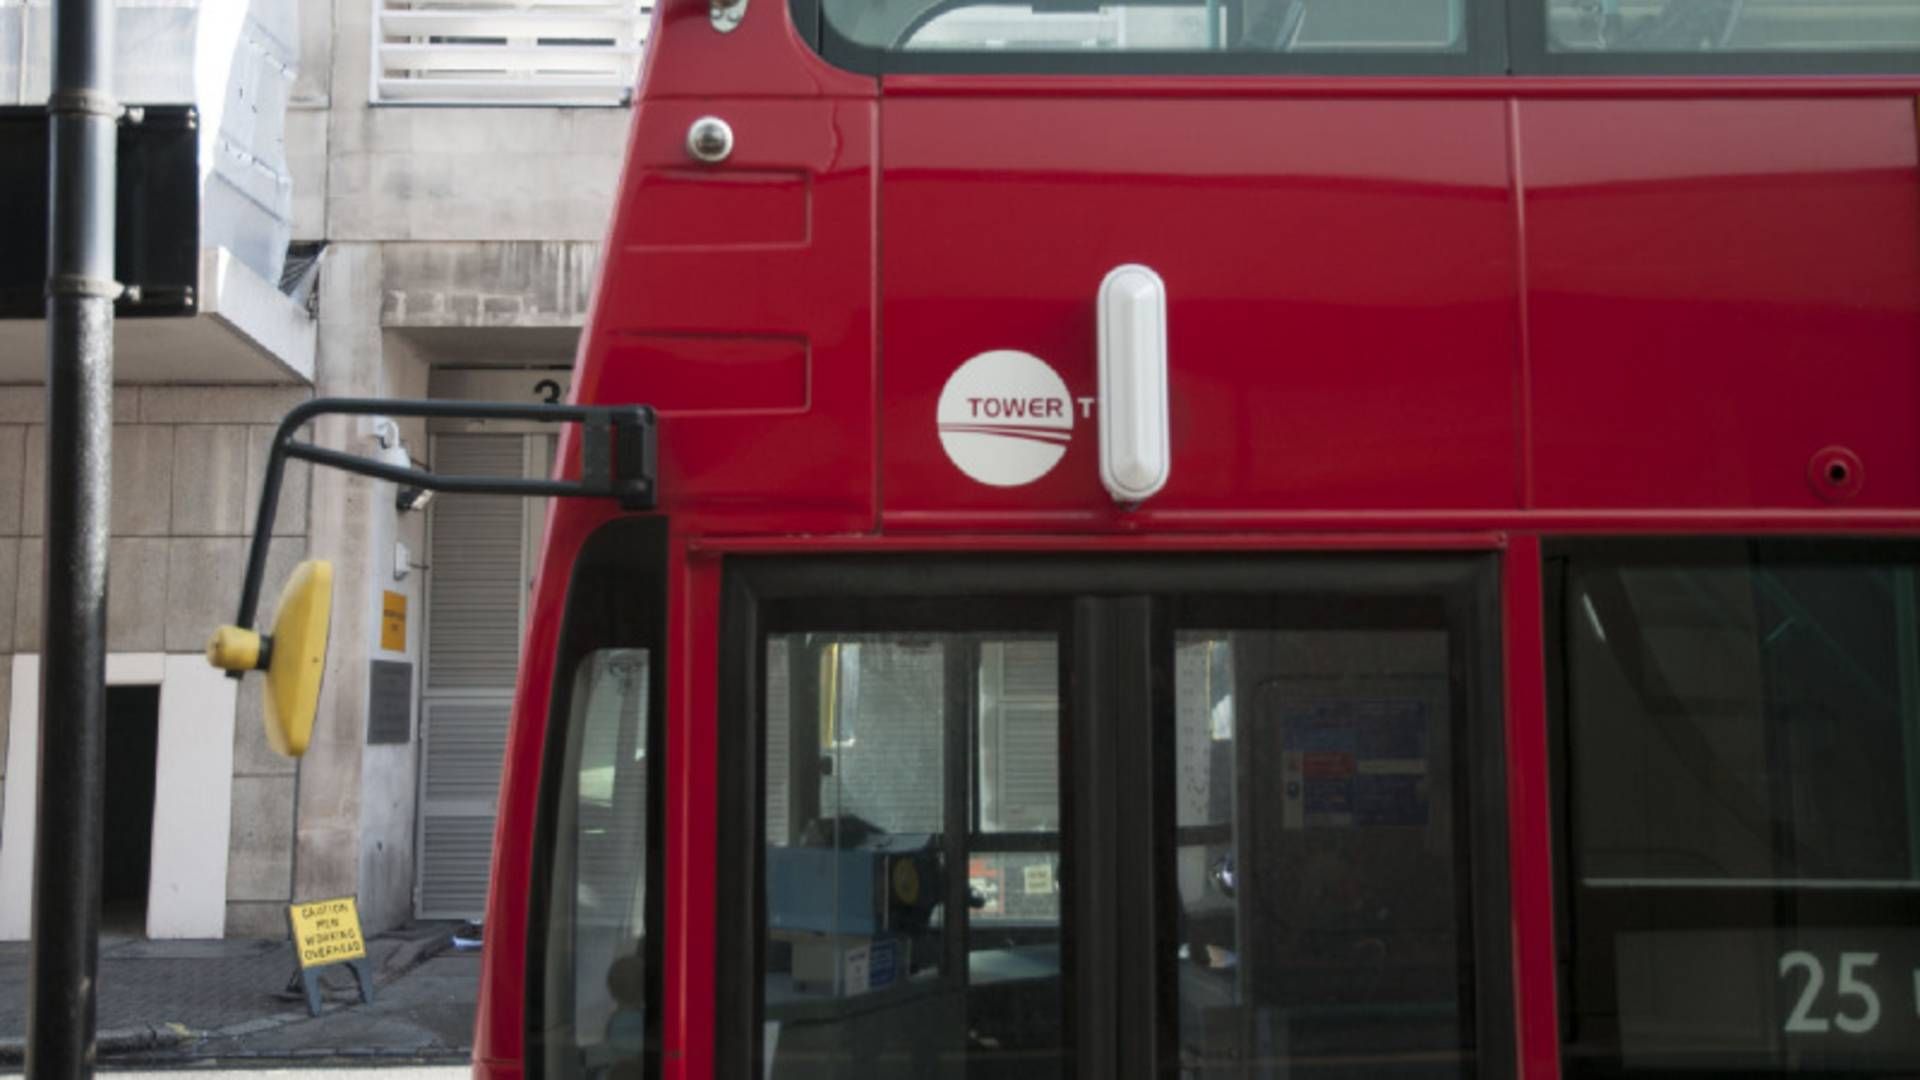 Leapcrafts luftkvalitetssensorer prydrer blandt andet Londons røde busser | Foto: Leapcraft/PR